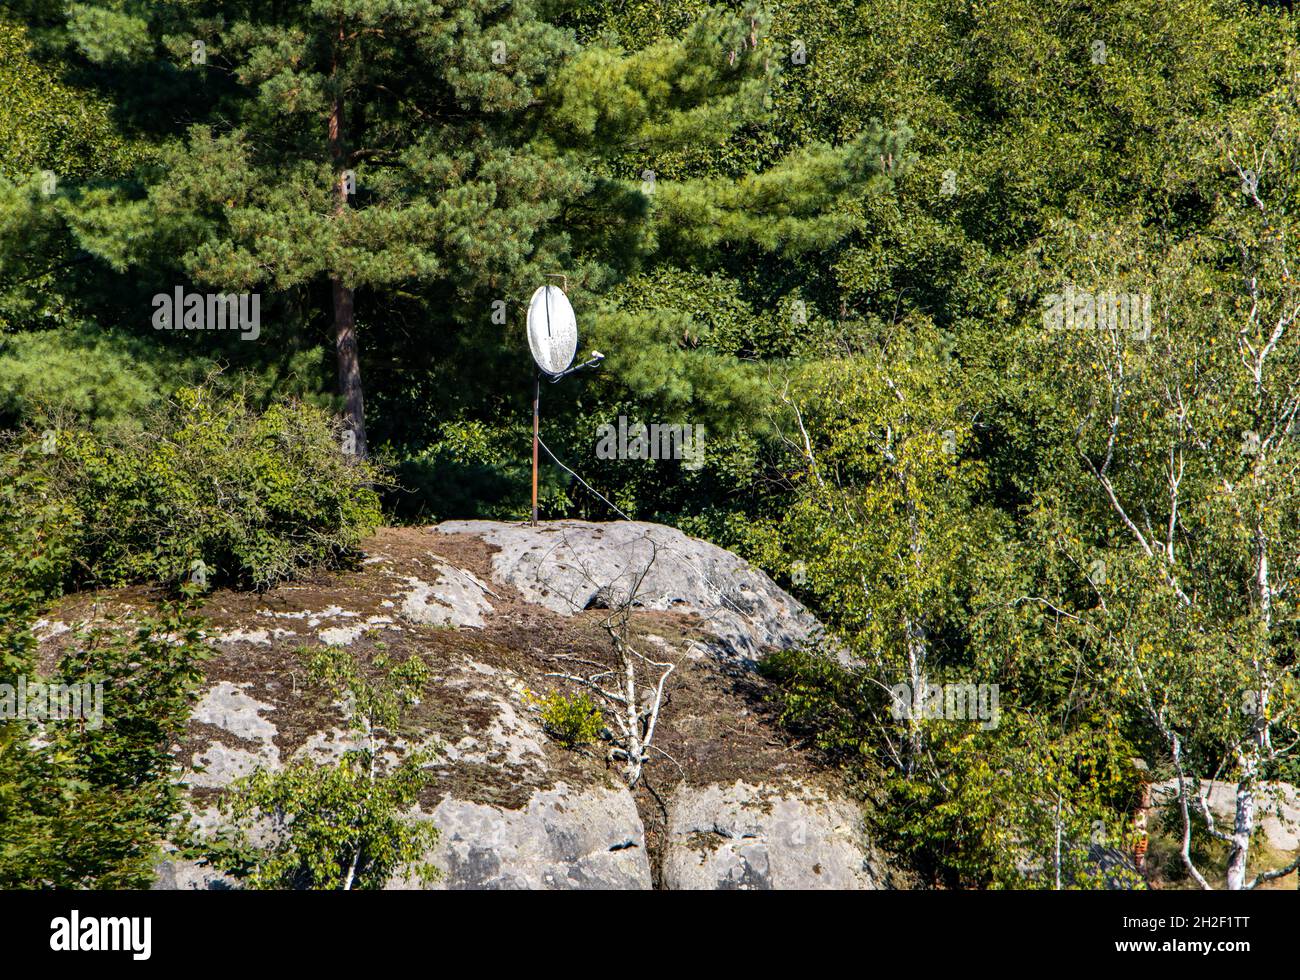 Une antenne parabolique est installée sur le dessus de la roche dans une forêt Banque D'Images